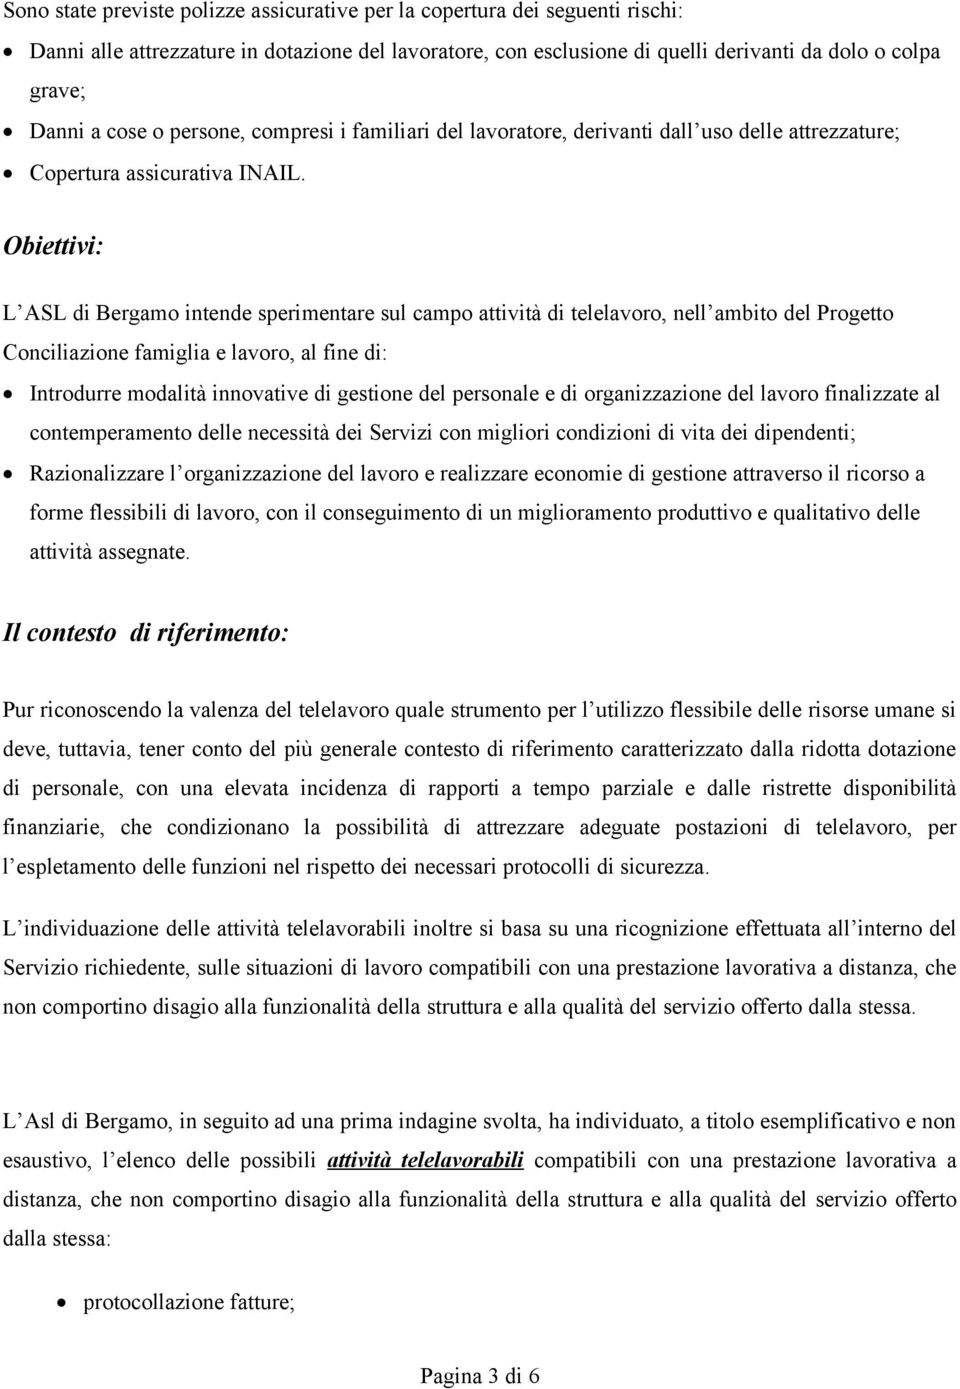 Obiettivi: L ASL di Bergamo intende sperimentare sul campo attività di telelavoro, nell ambito del Progetto Conciliazione famiglia e lavoro, al fine di: Introdurre modalità innovative di gestione del